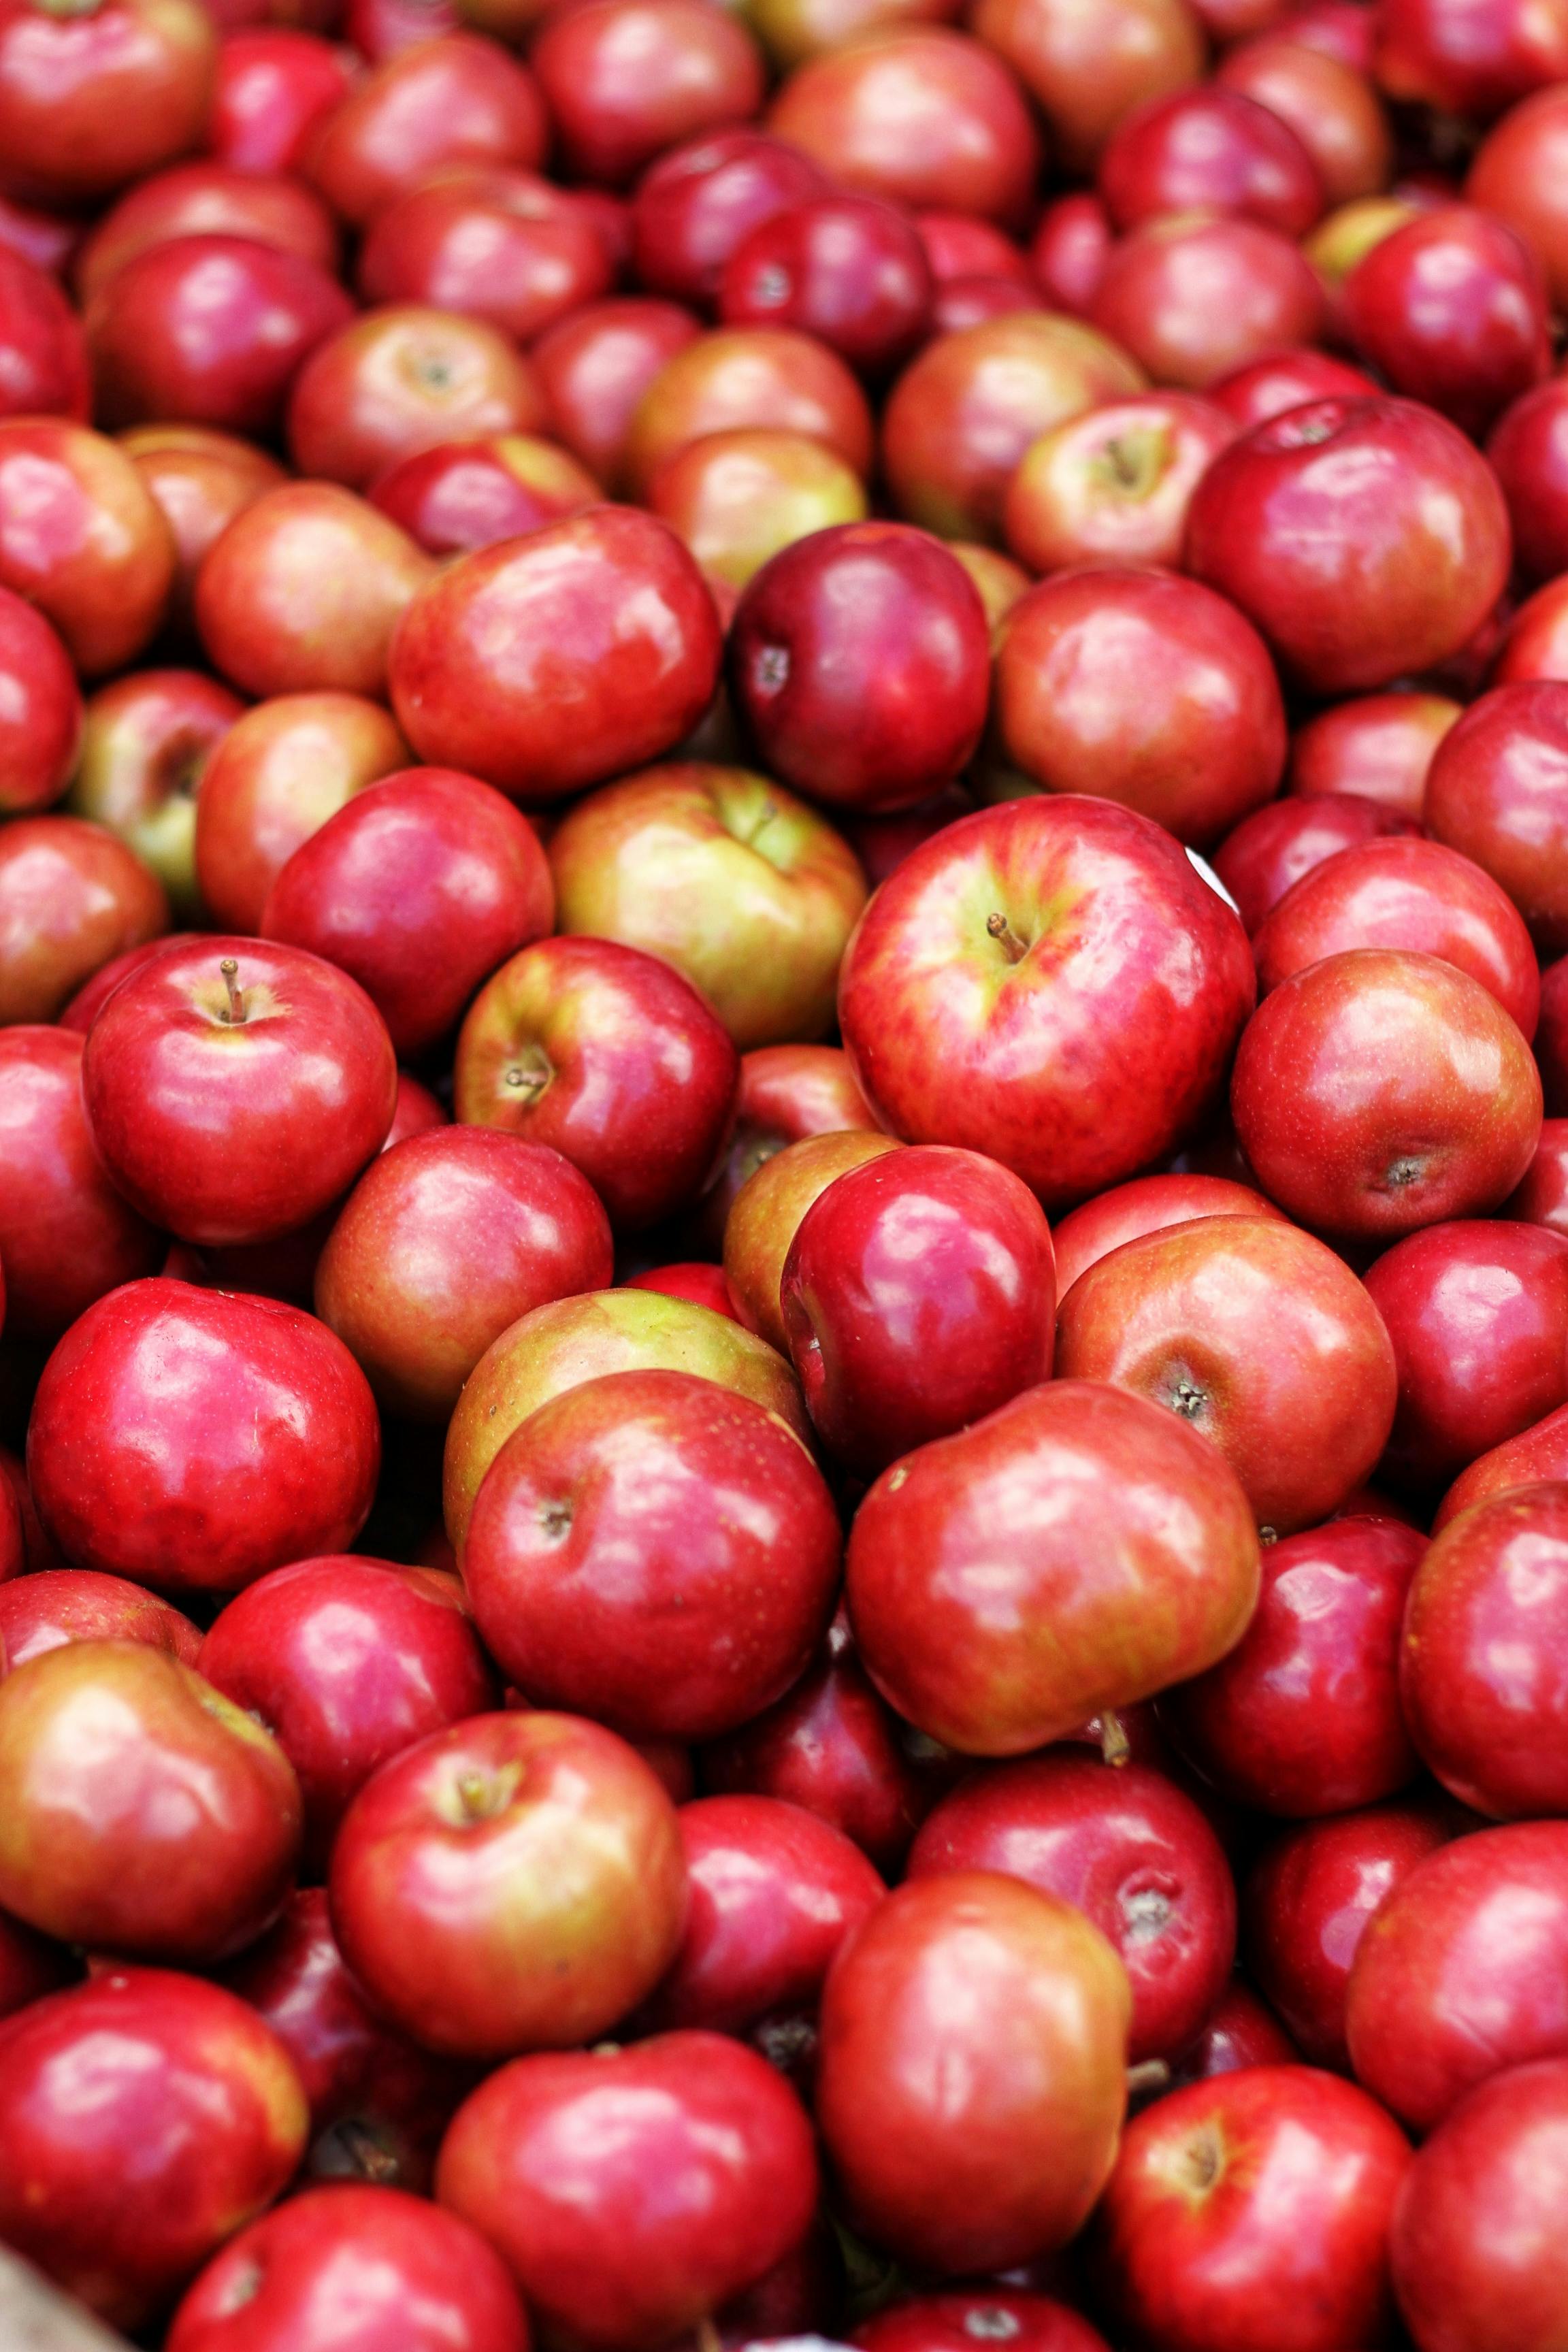 Kostenloses Foto zum Thema: äpfel, ernährung, ernte